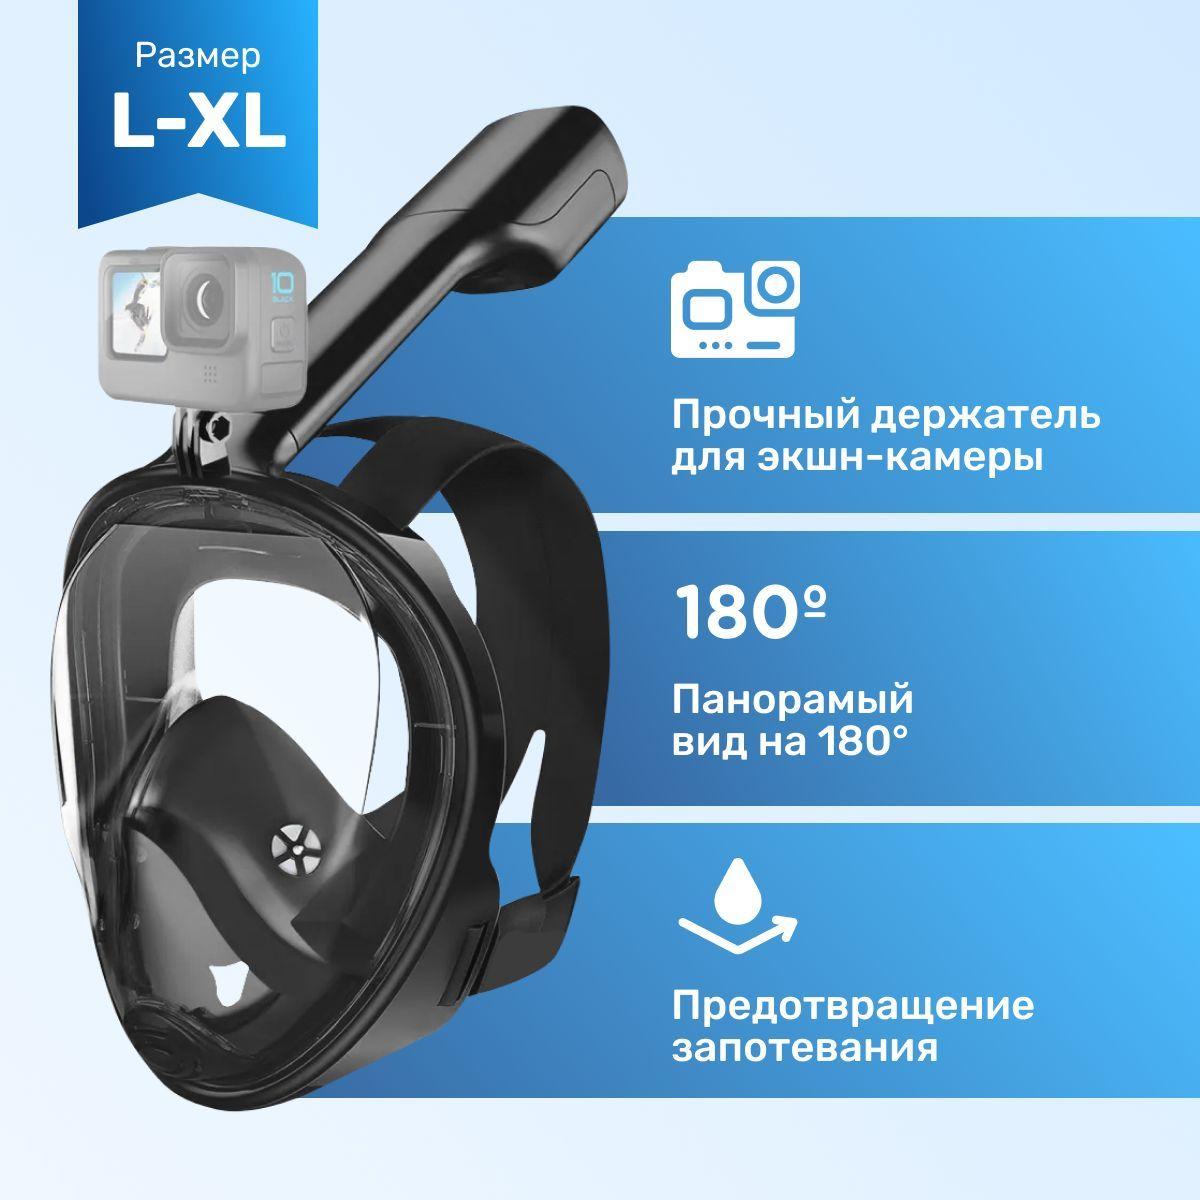 Твой маркет | Подводная маска для плавания, полнолицевая маска для снорклинга с креплением для экшн-камеры, размер L/XL, цвет: черный